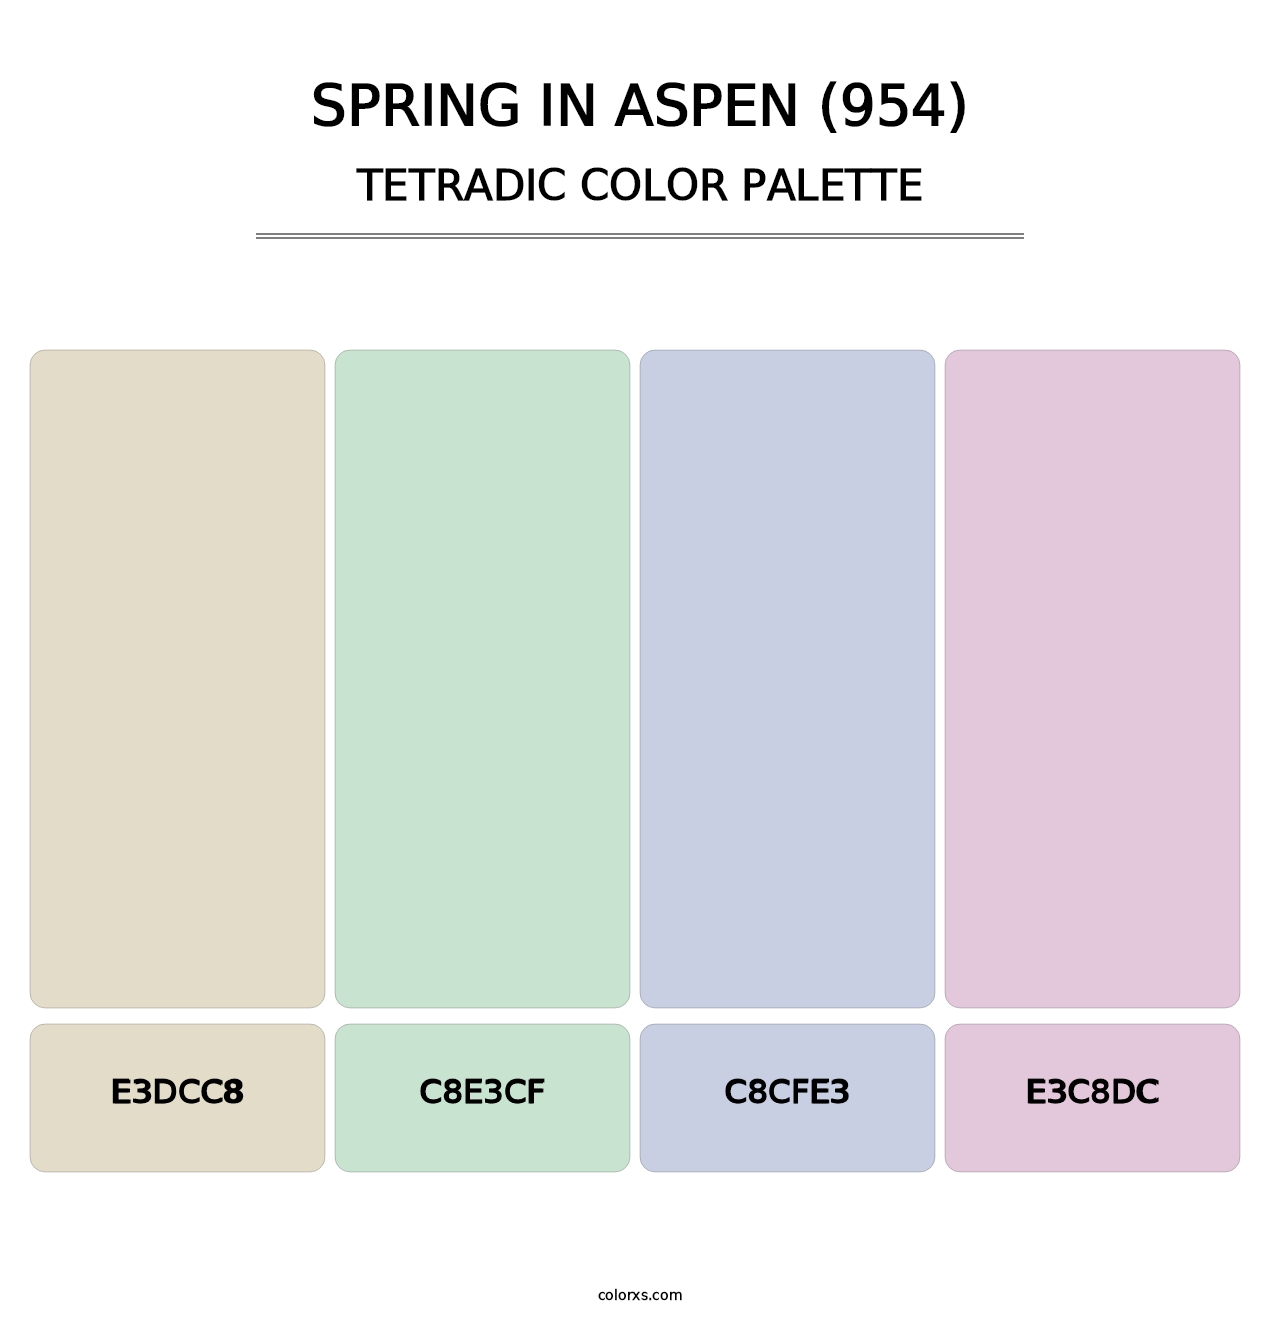 Spring in Aspen (954) - Tetradic Color Palette